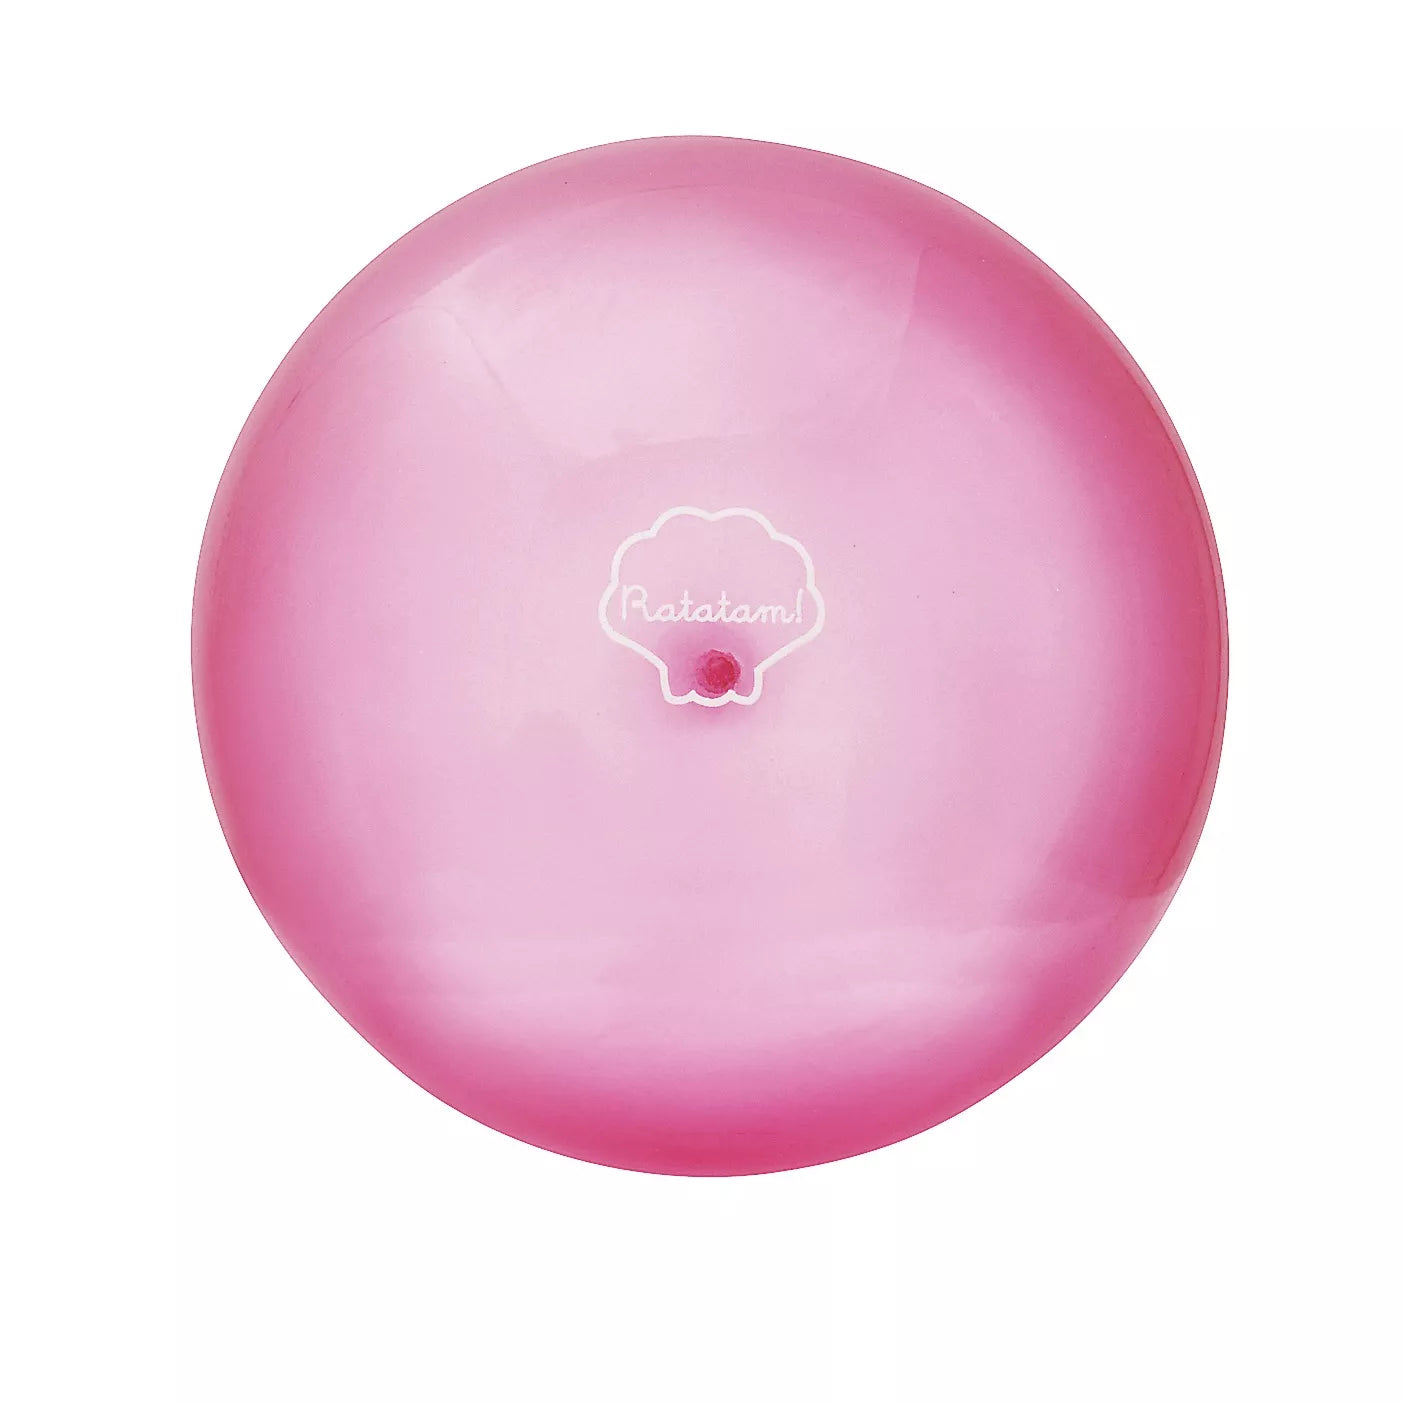 Seashell balloon | Pink